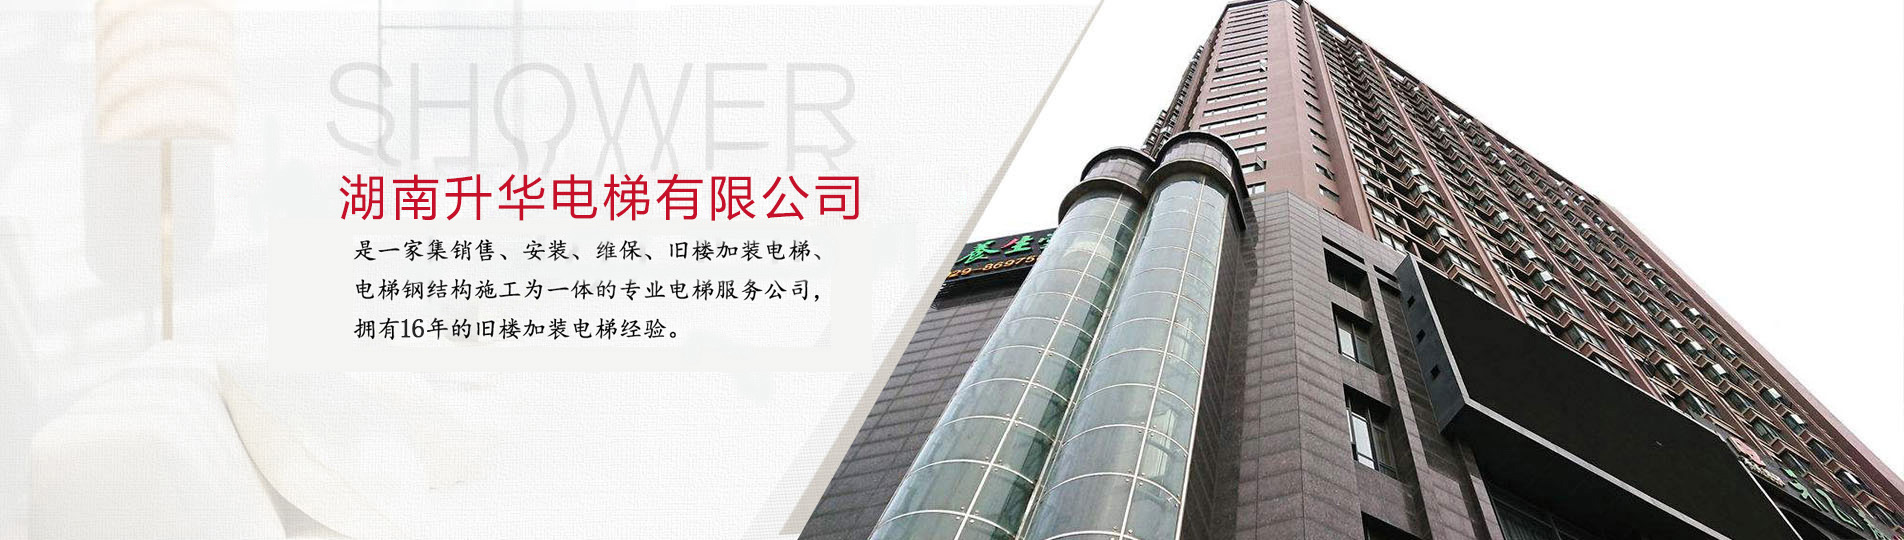 长沙省委蓉园小区首台亚平层入户电梯交付